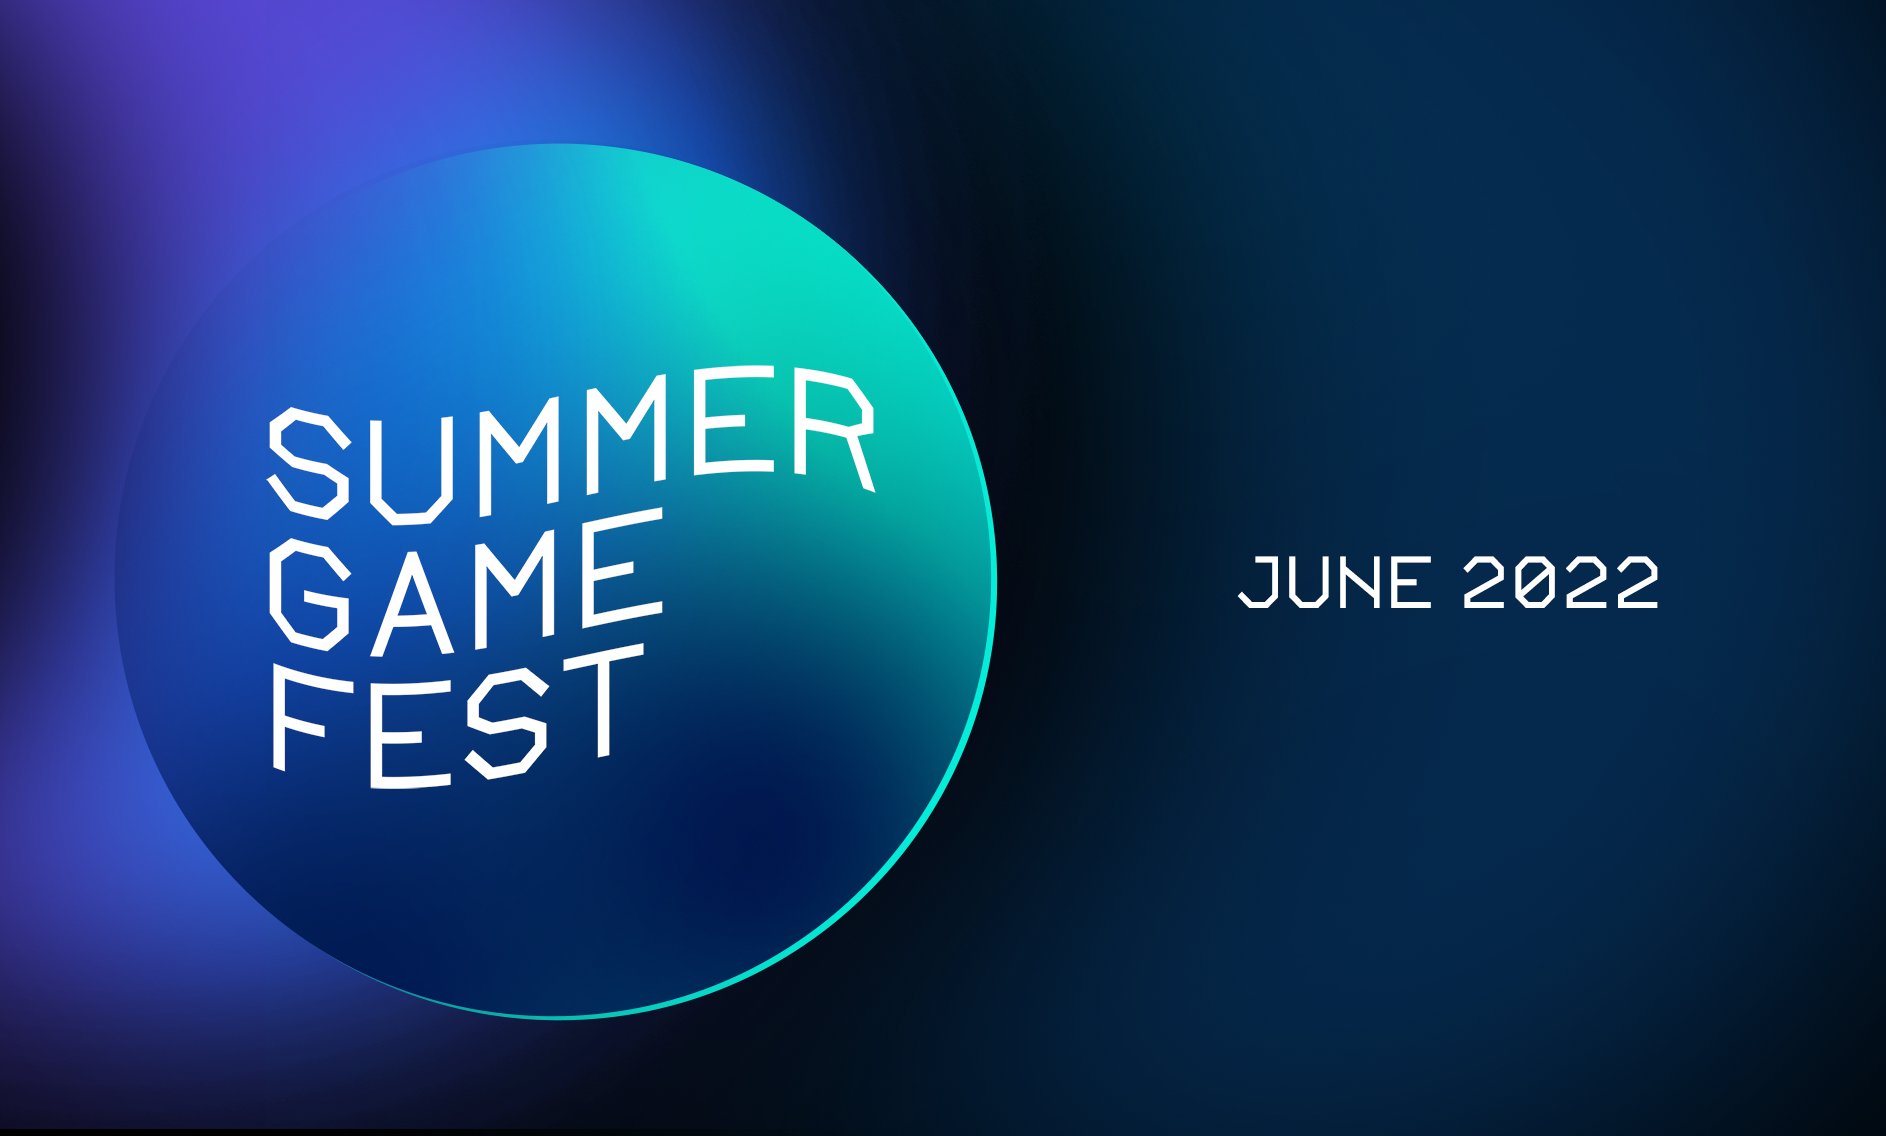 “夏季游戏节”活动2022年6月开启 将设置开幕式直播